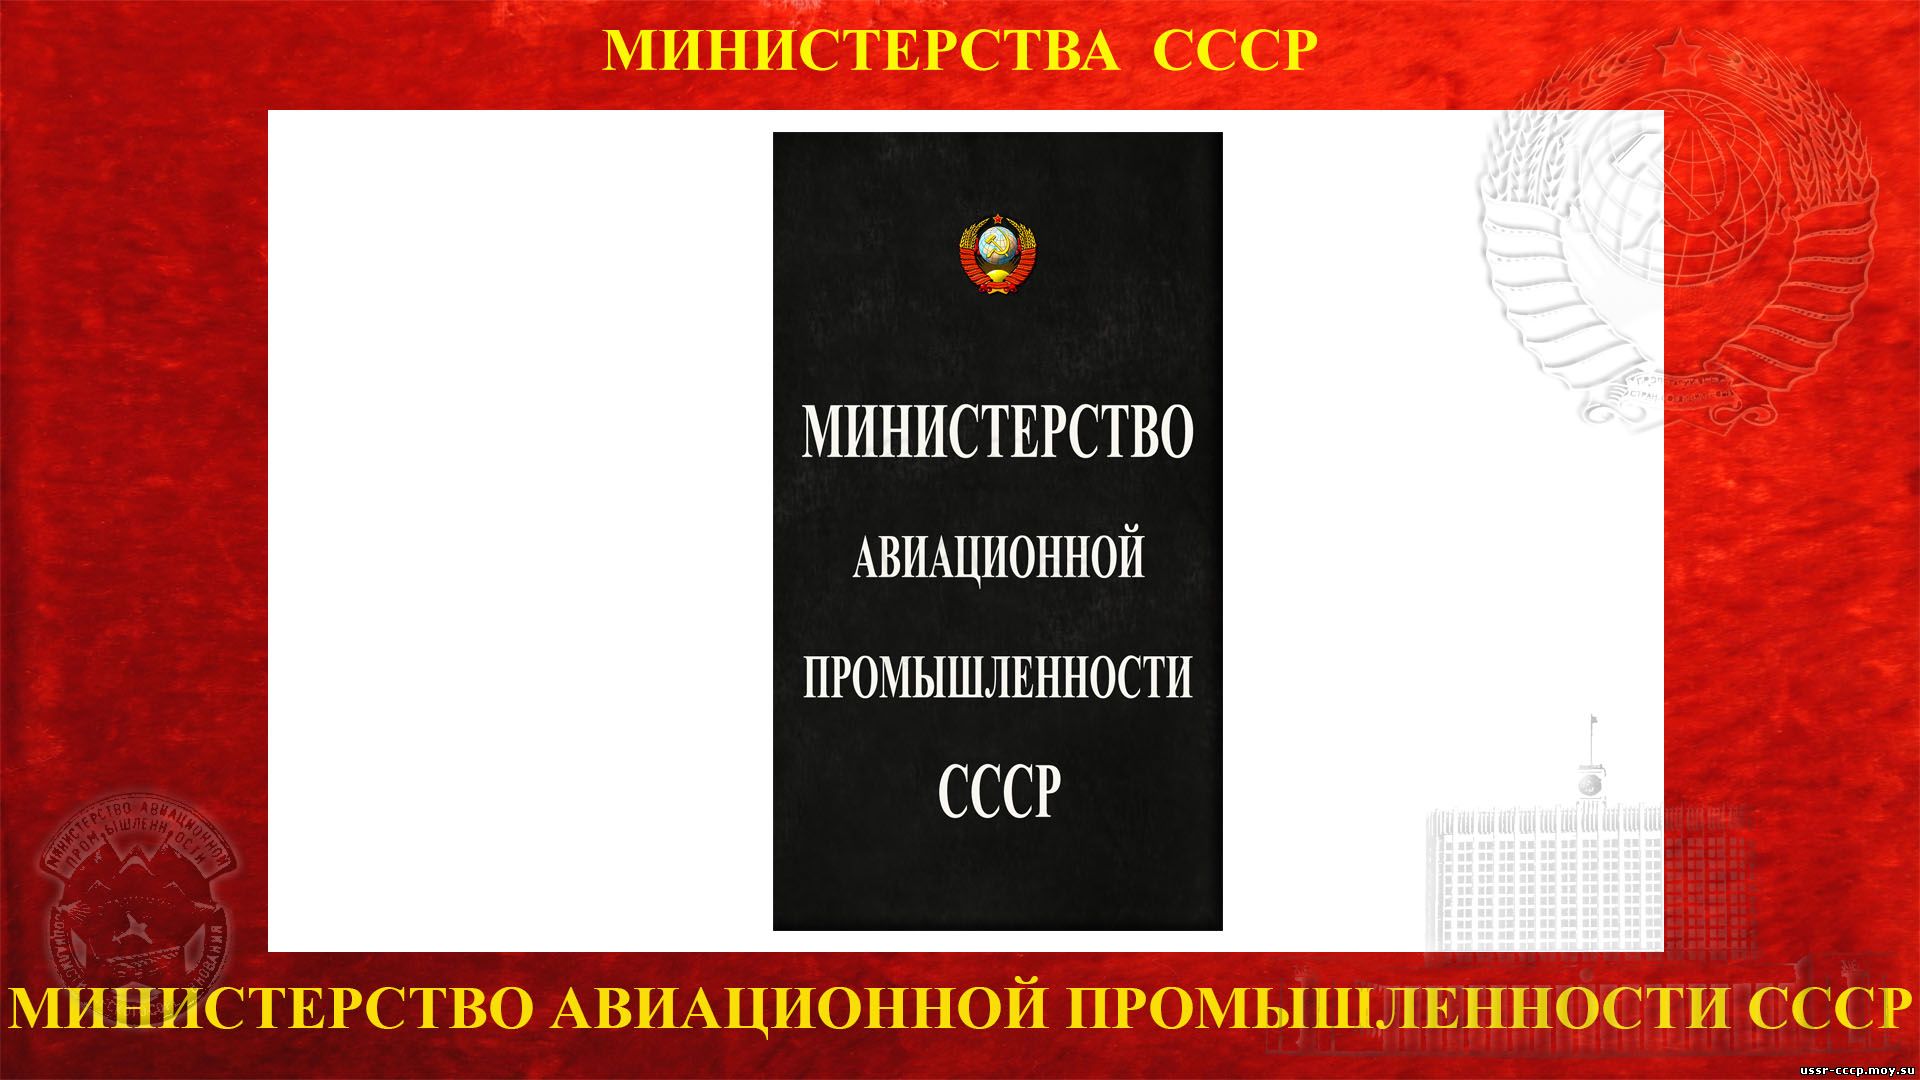 Министерство авиационной промышленности СССР — (Минавиапром СССР) (Полное повествование) 